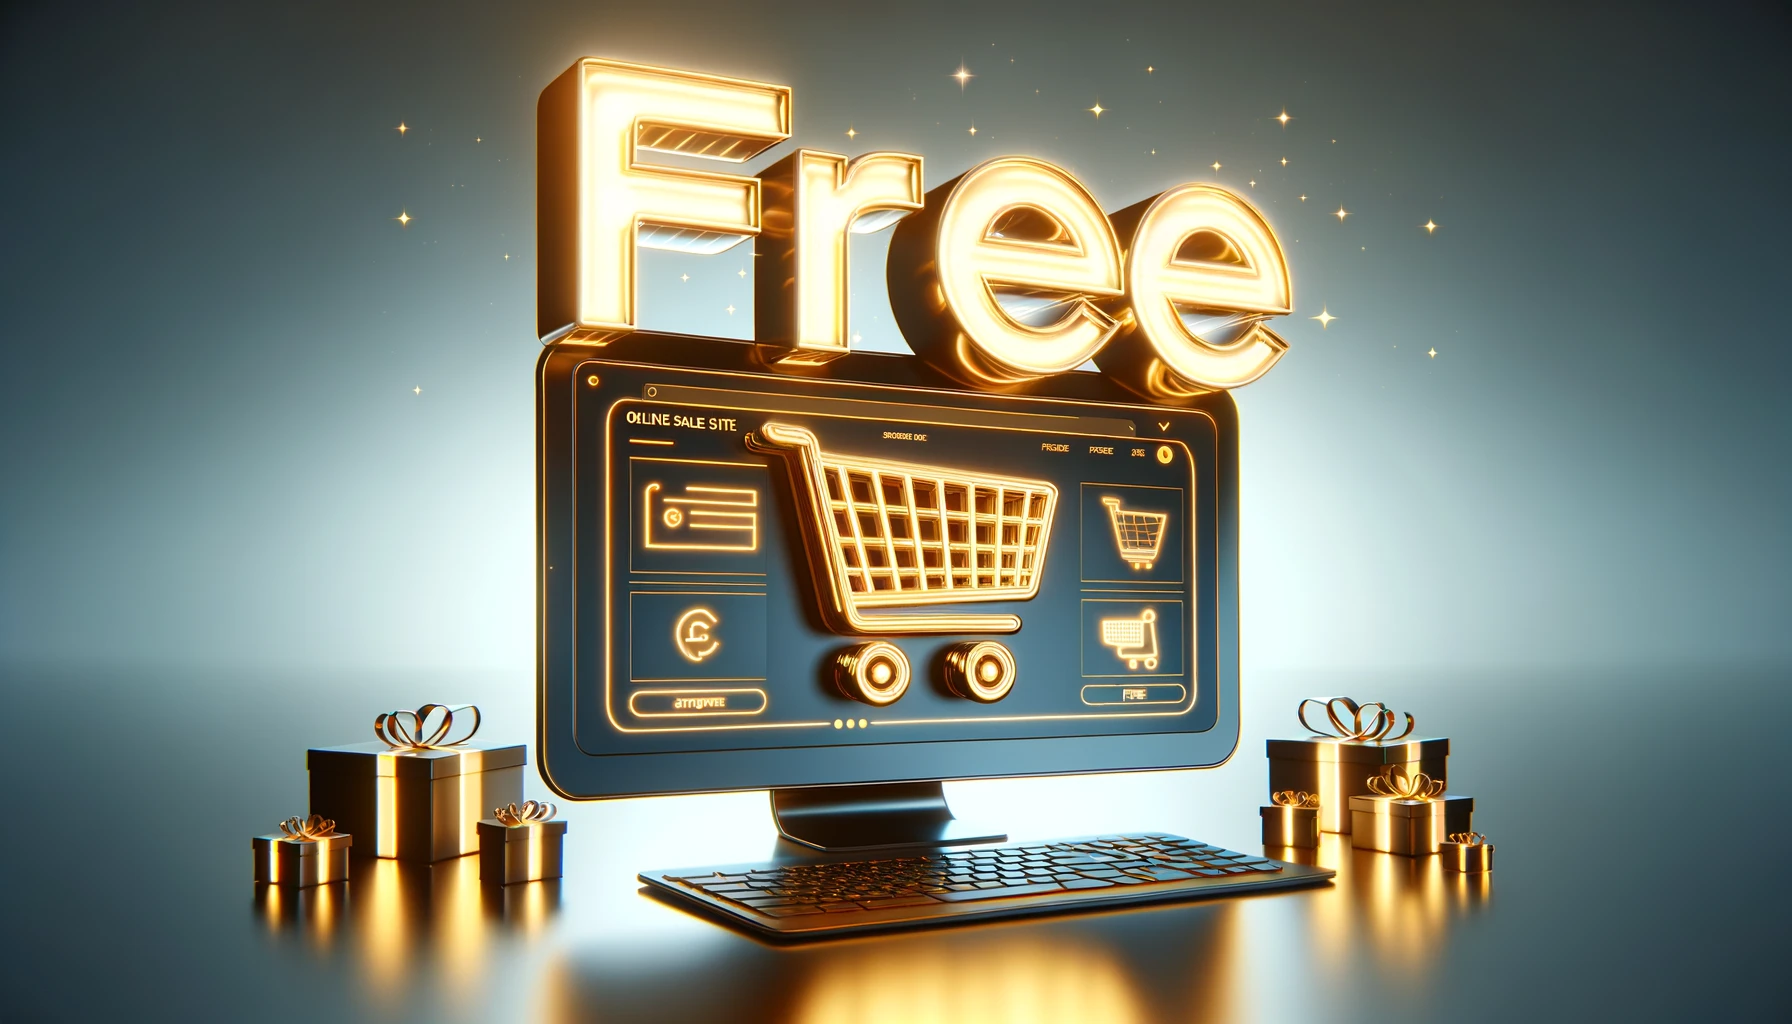 creer un site ecommerce gratuit